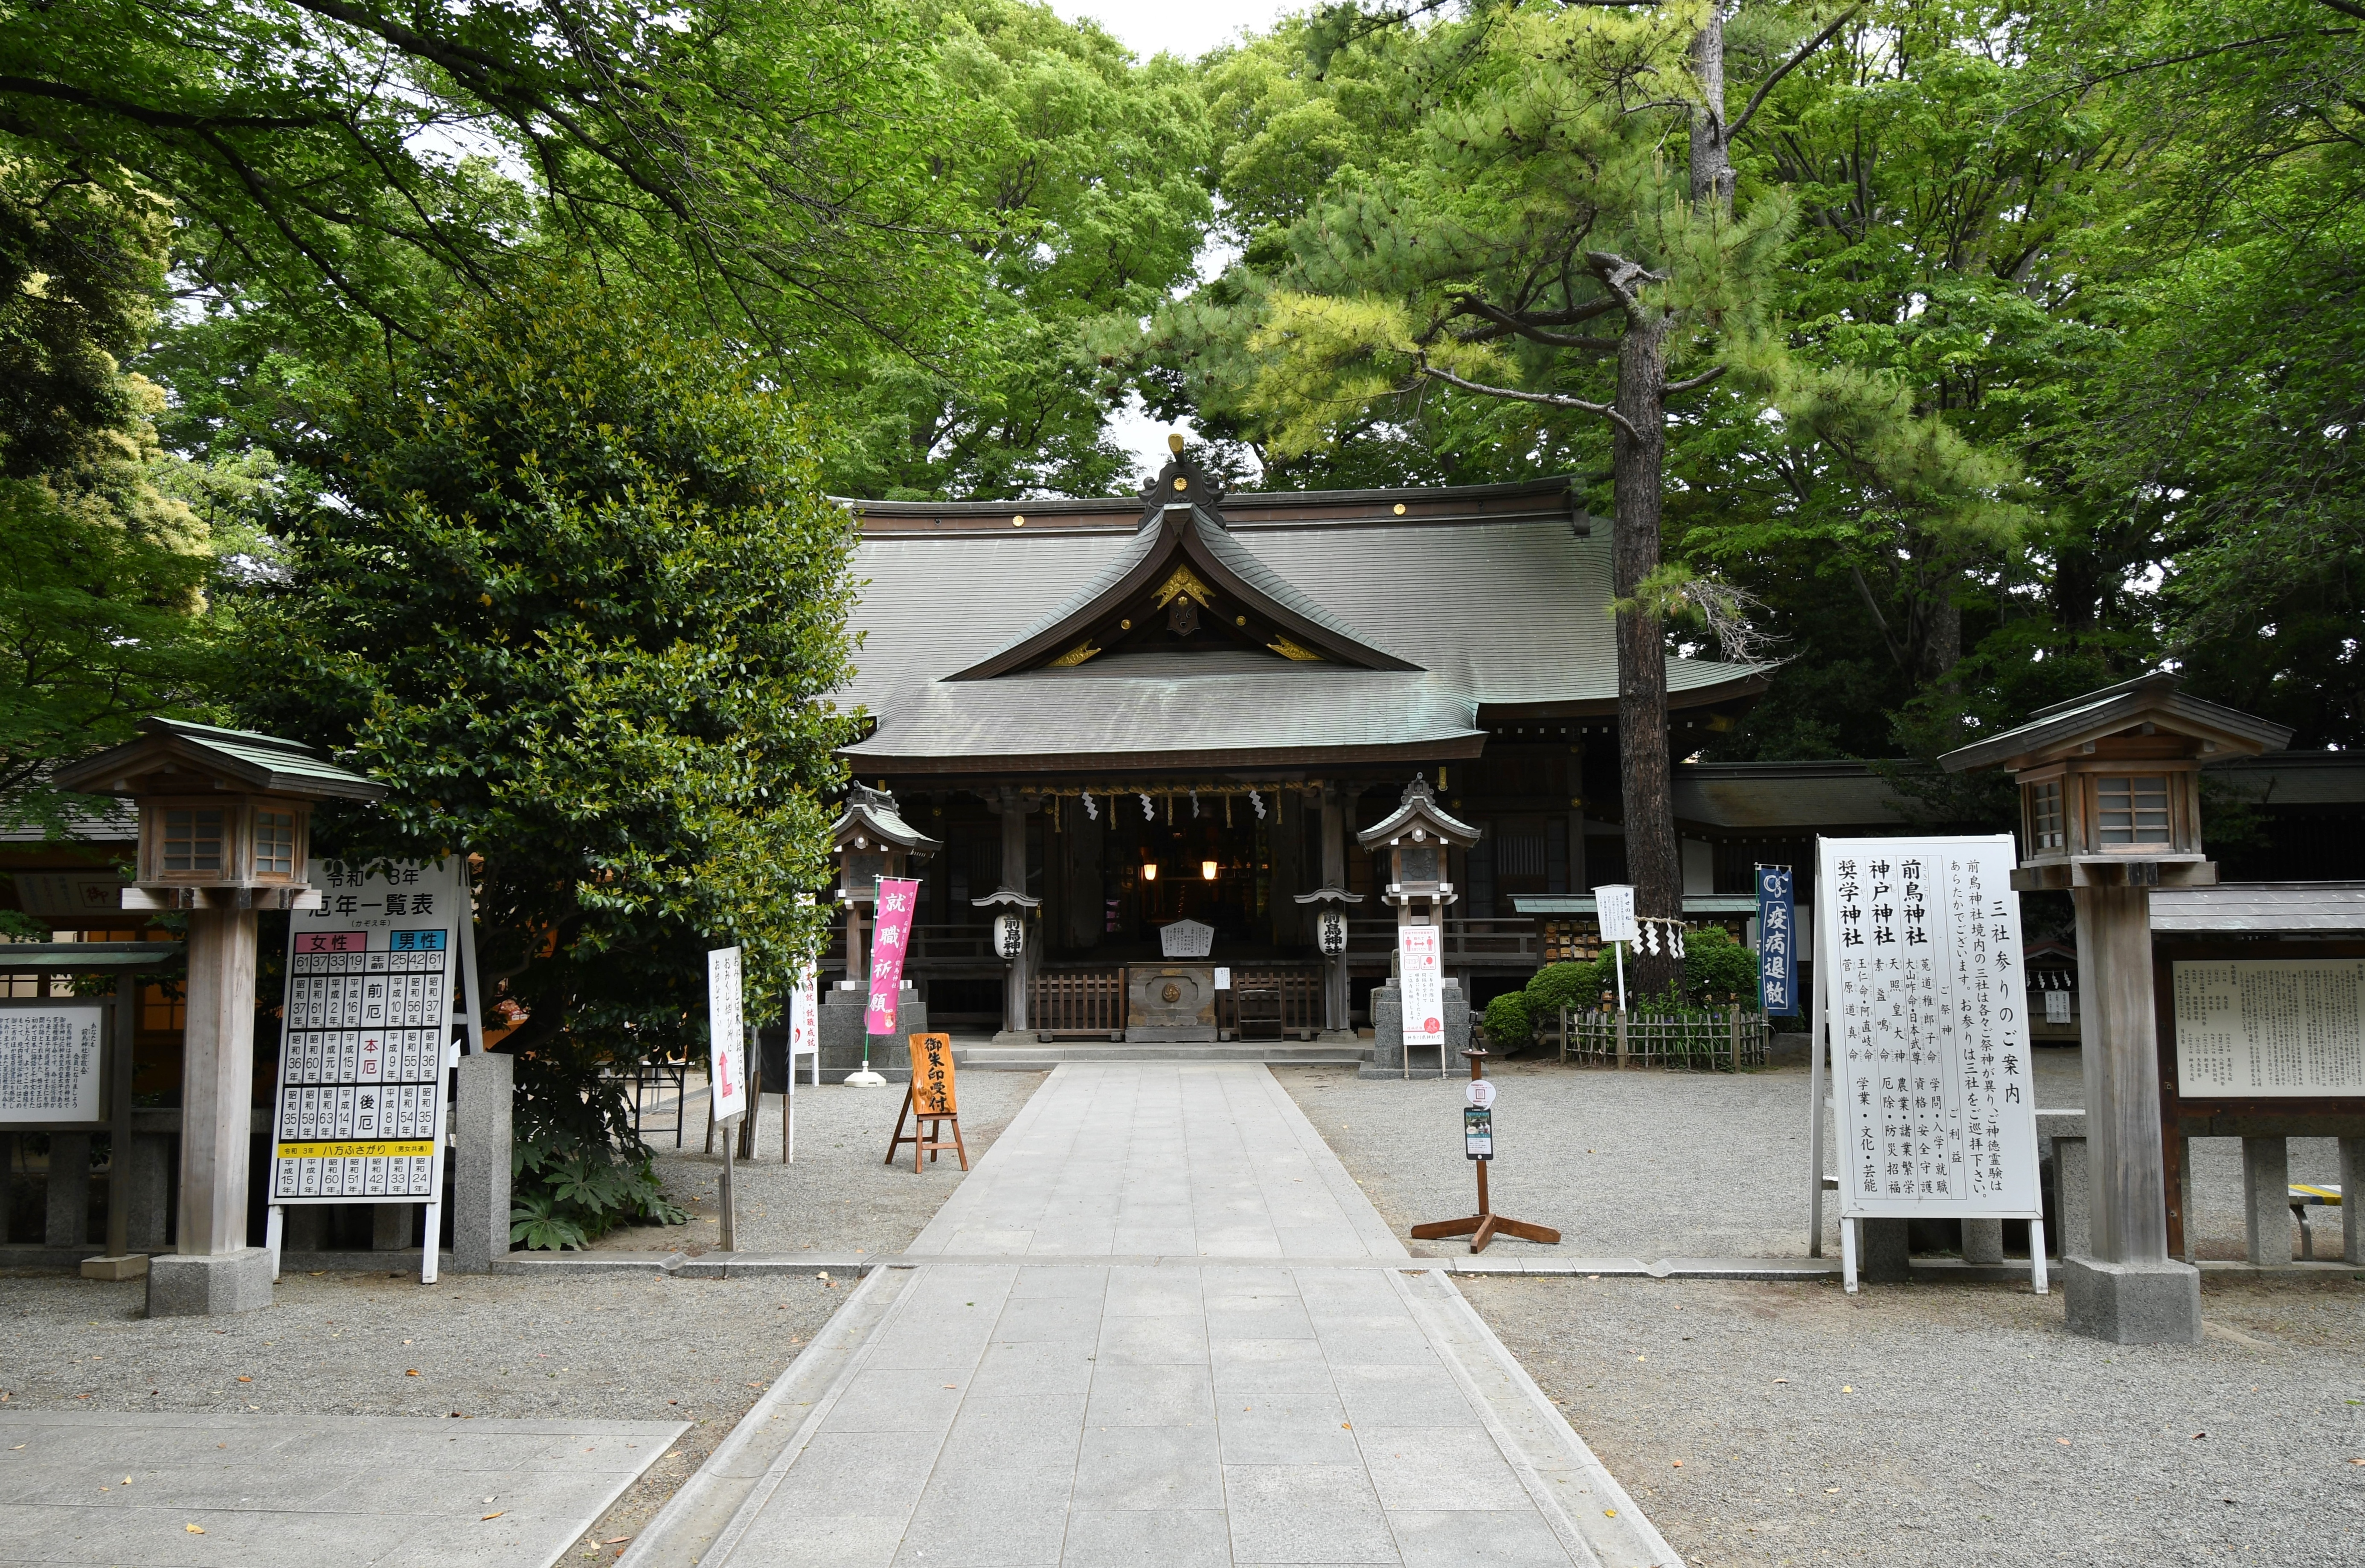 前鳥神社 - Wikipedia